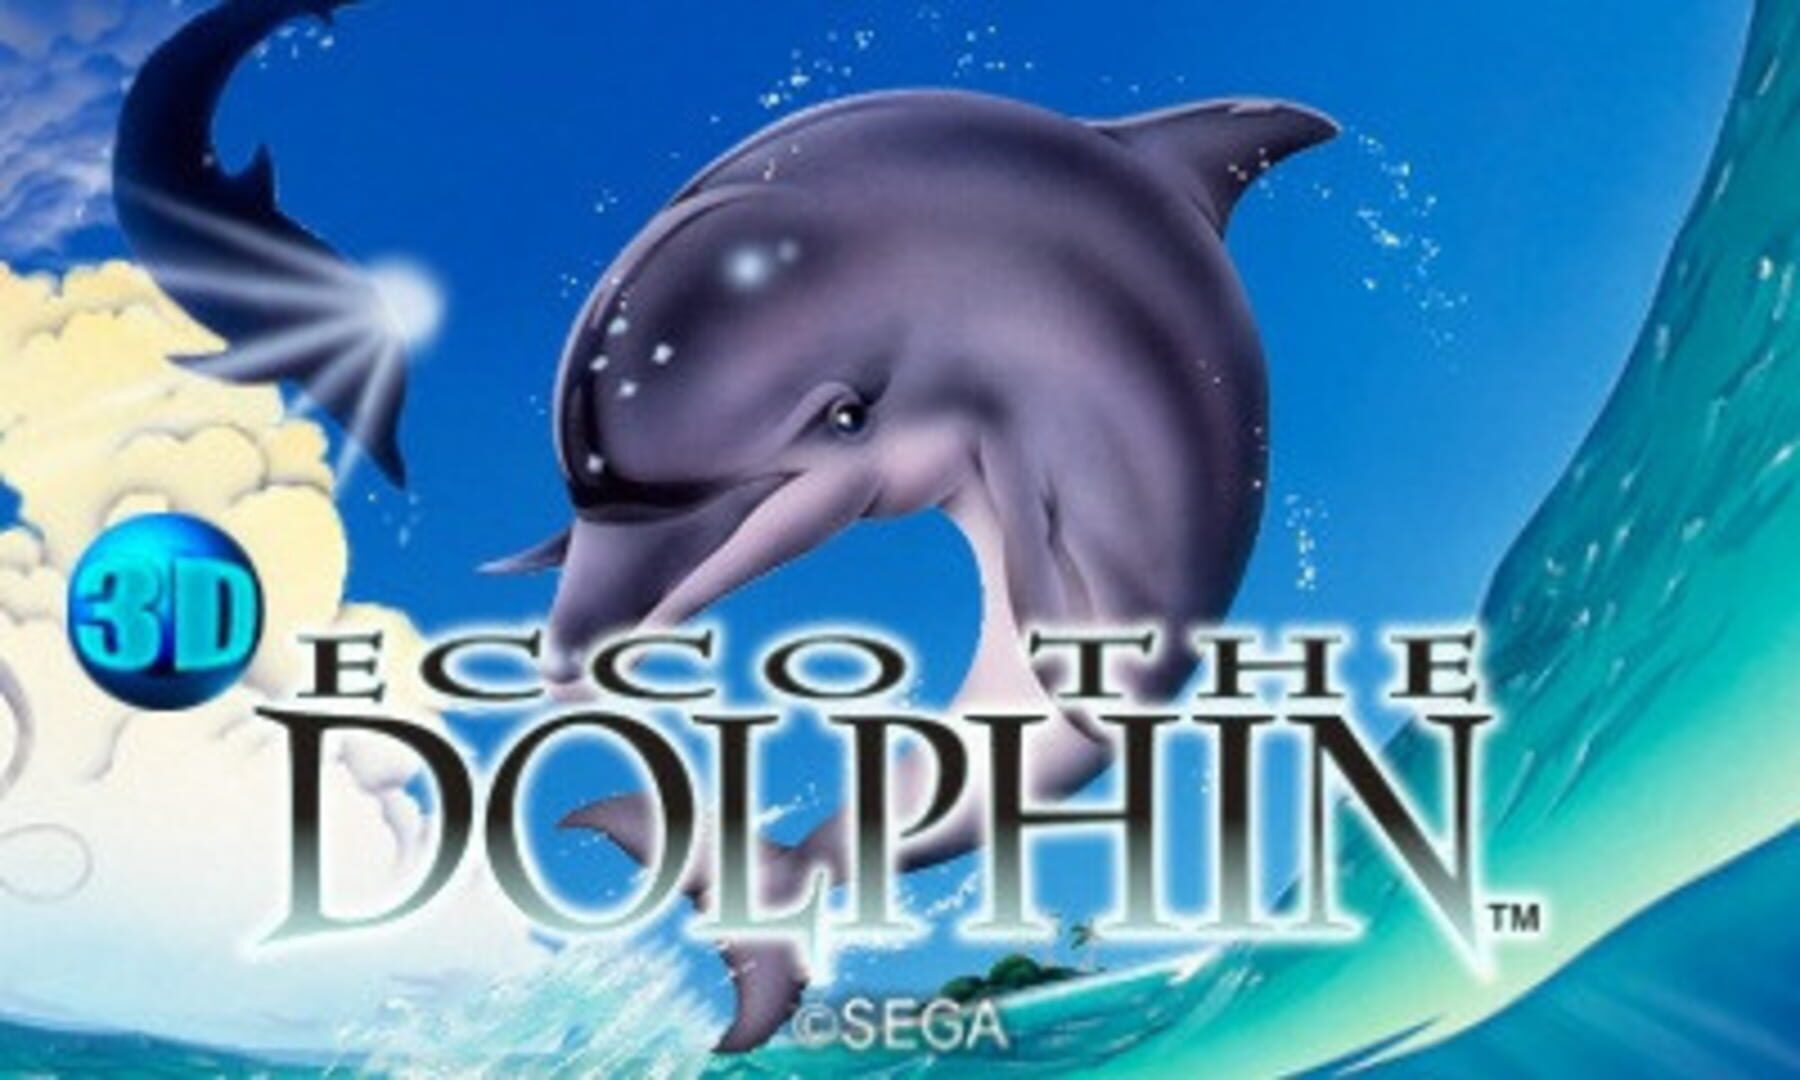 Arte - 3D Ecco the Dolphin